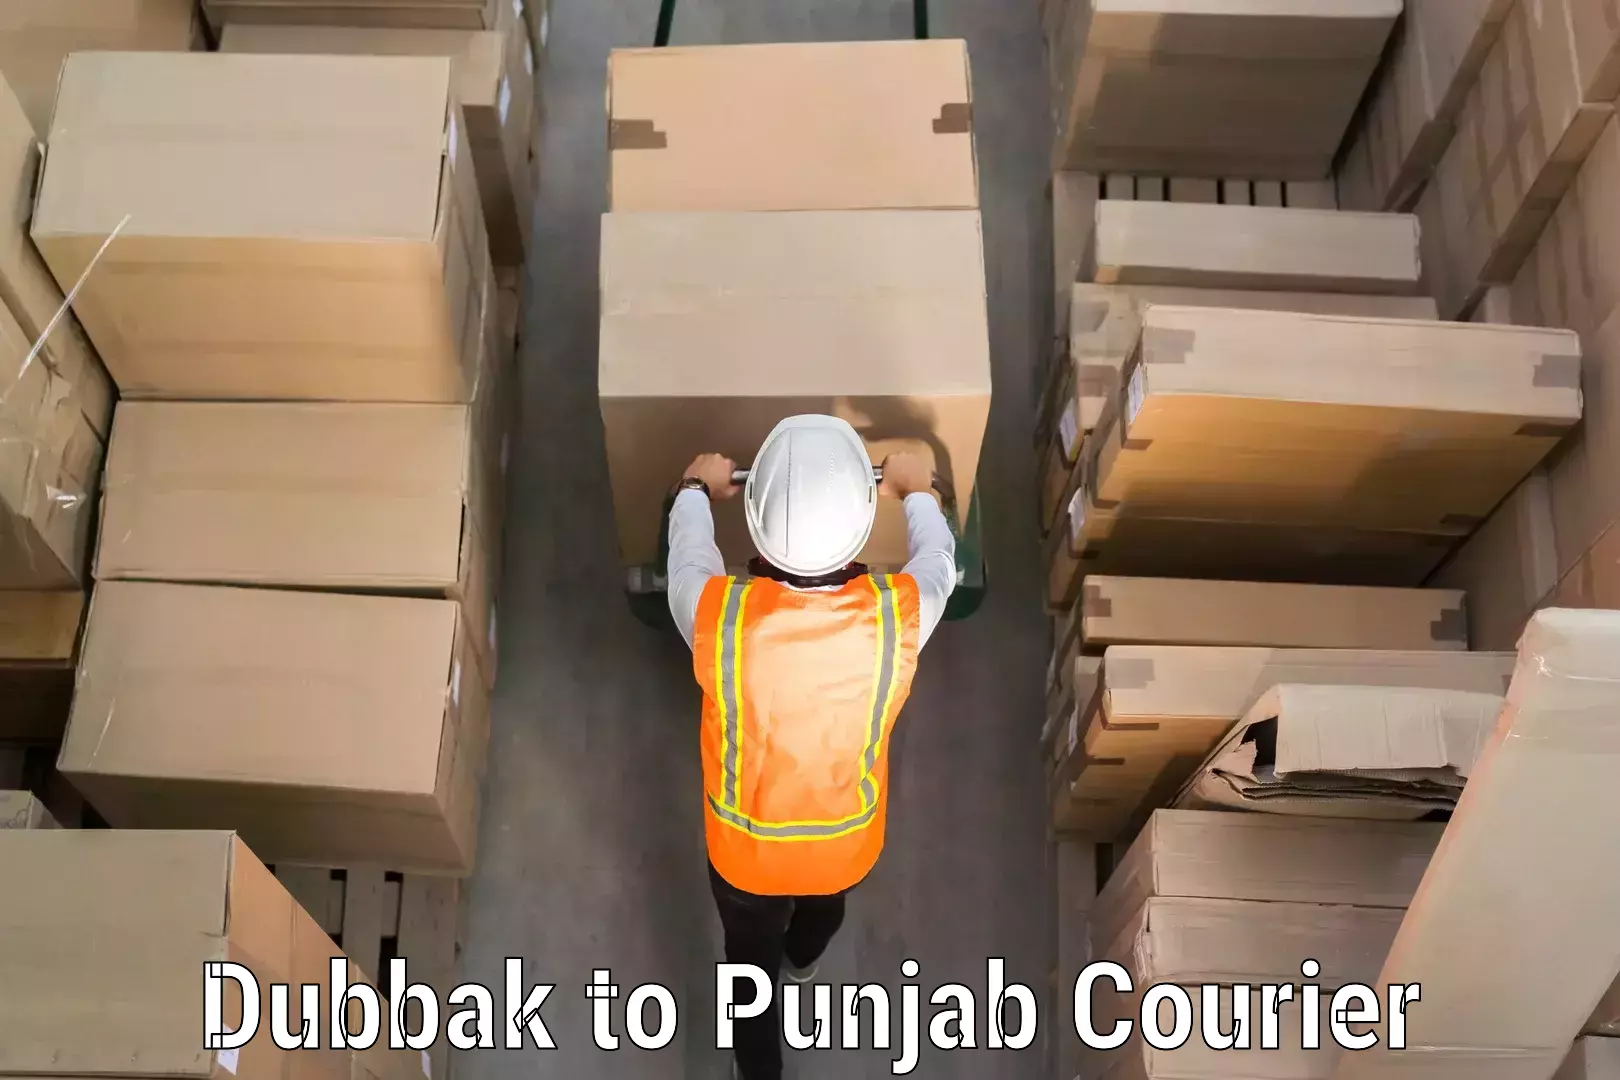 Baggage shipping experts Dubbak to Punjab